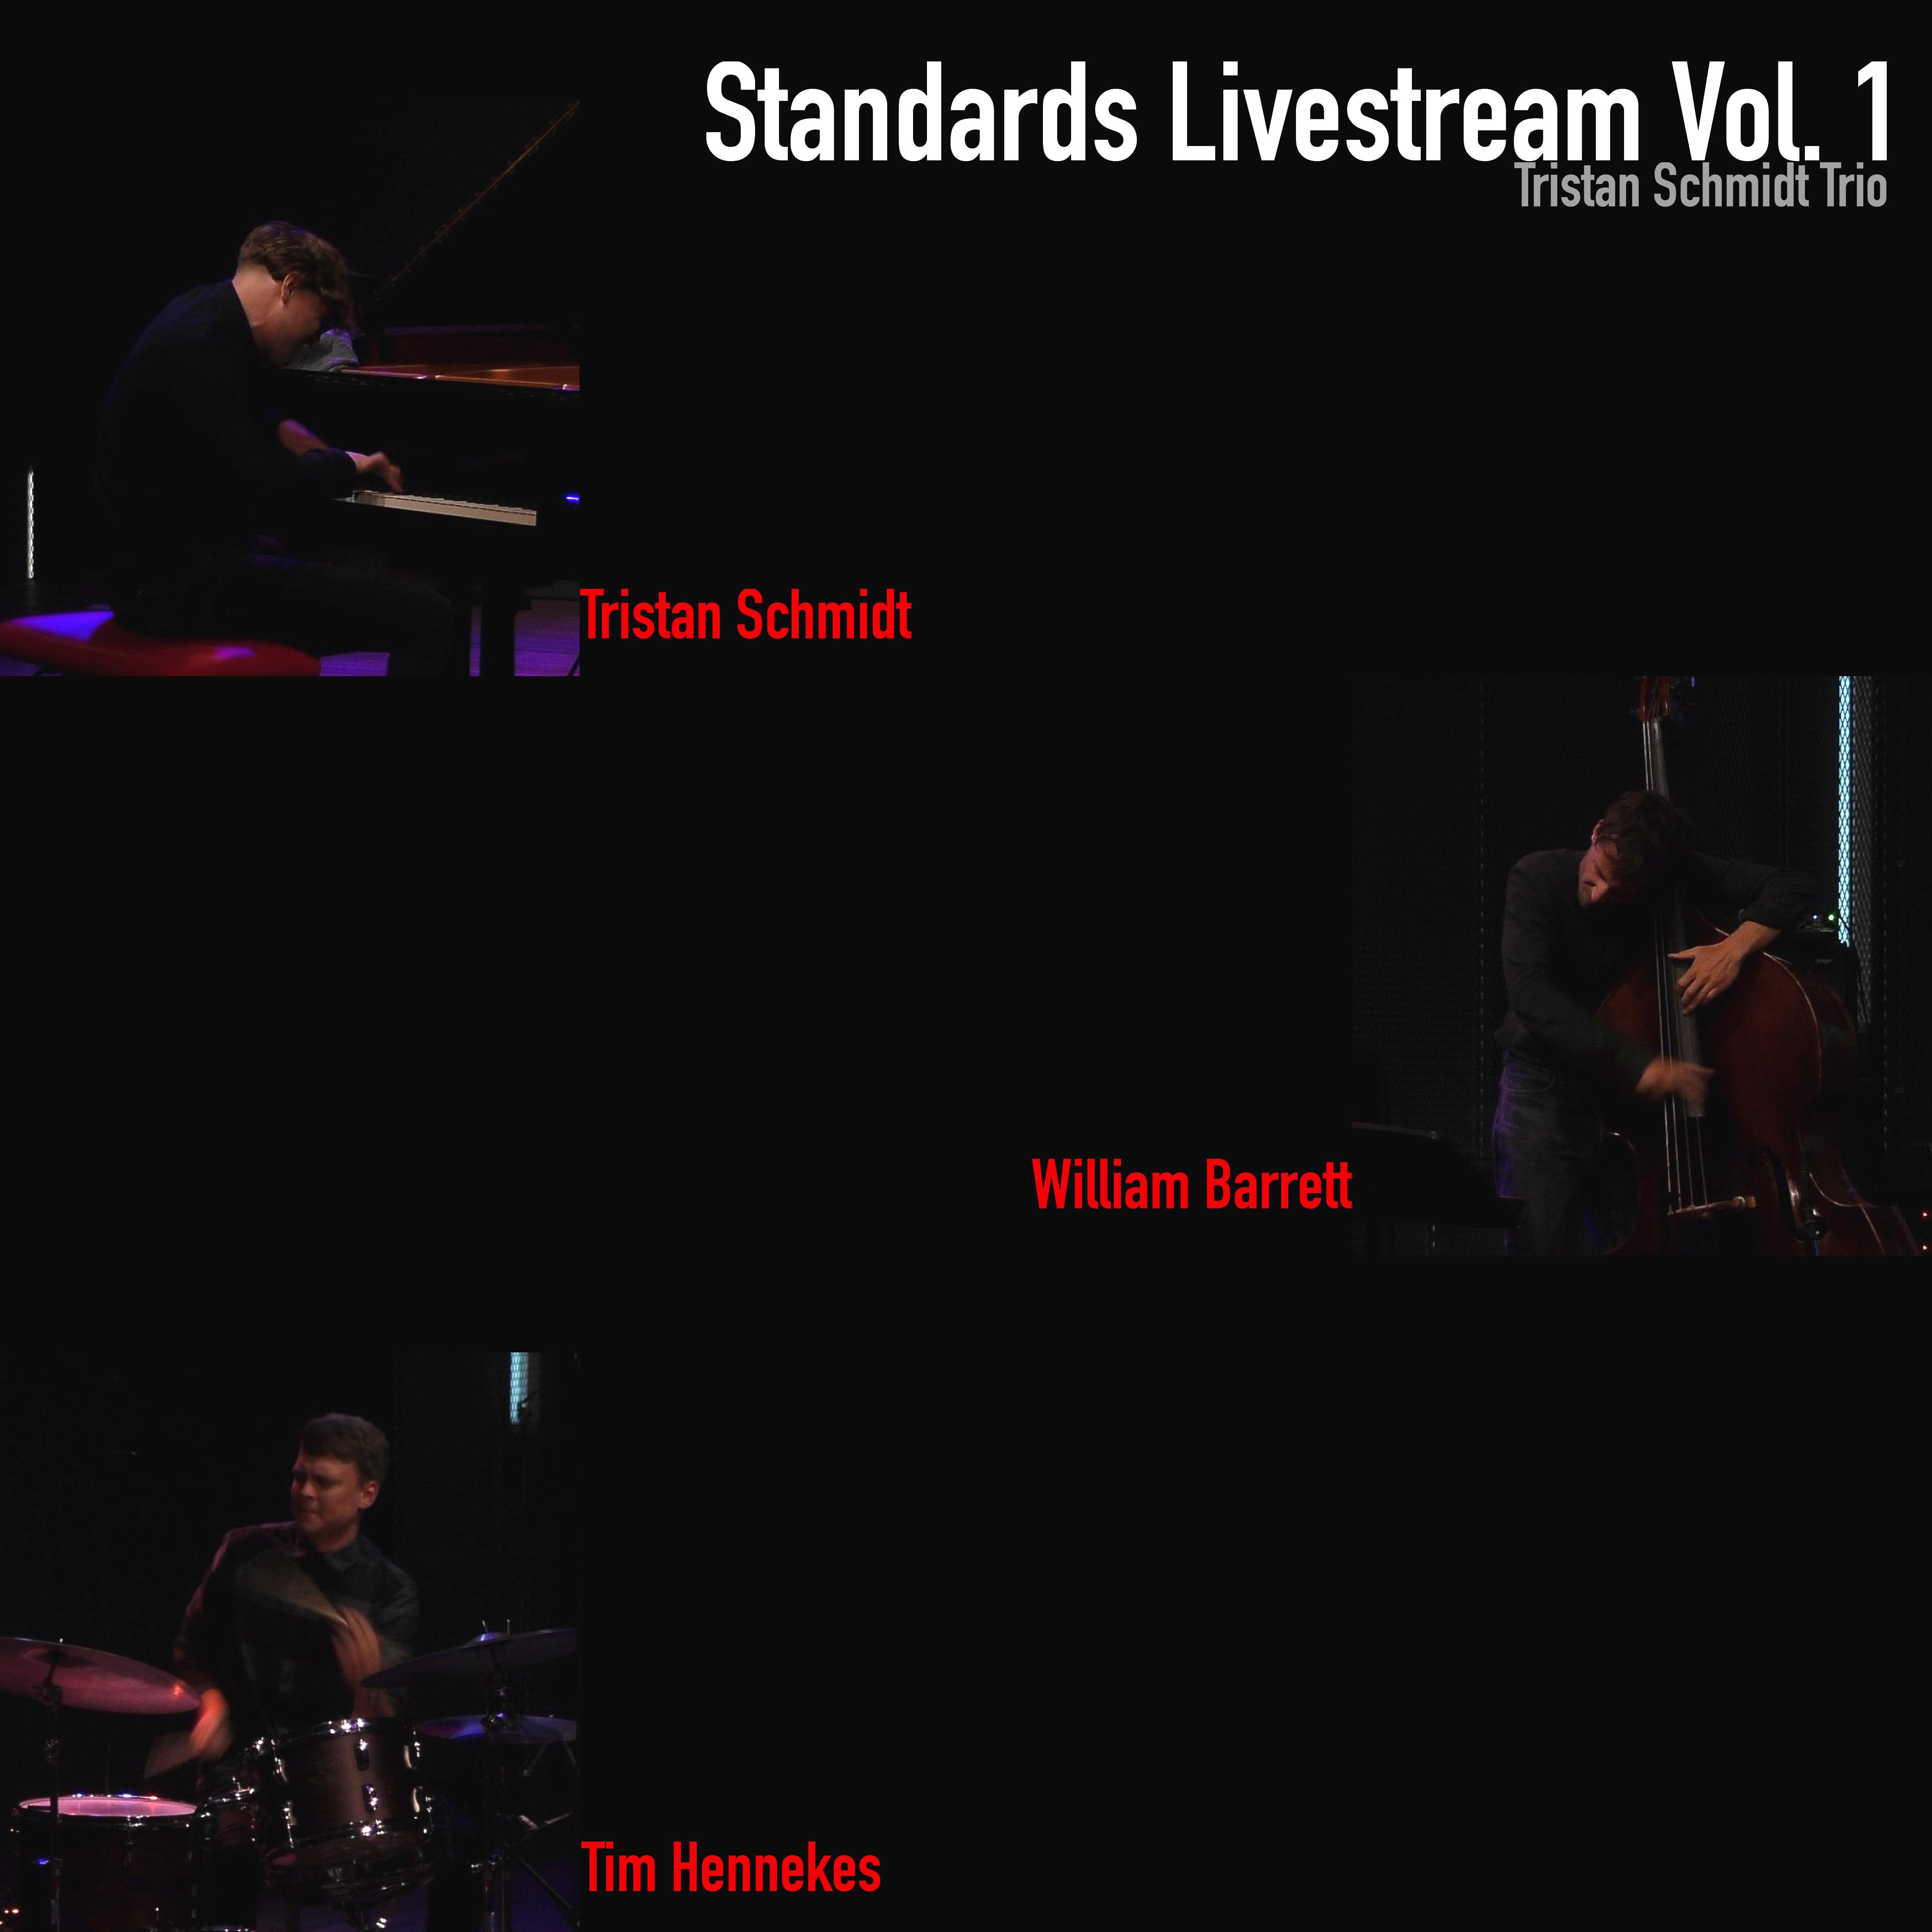 Standards Livestream Vol. 1 (CD)